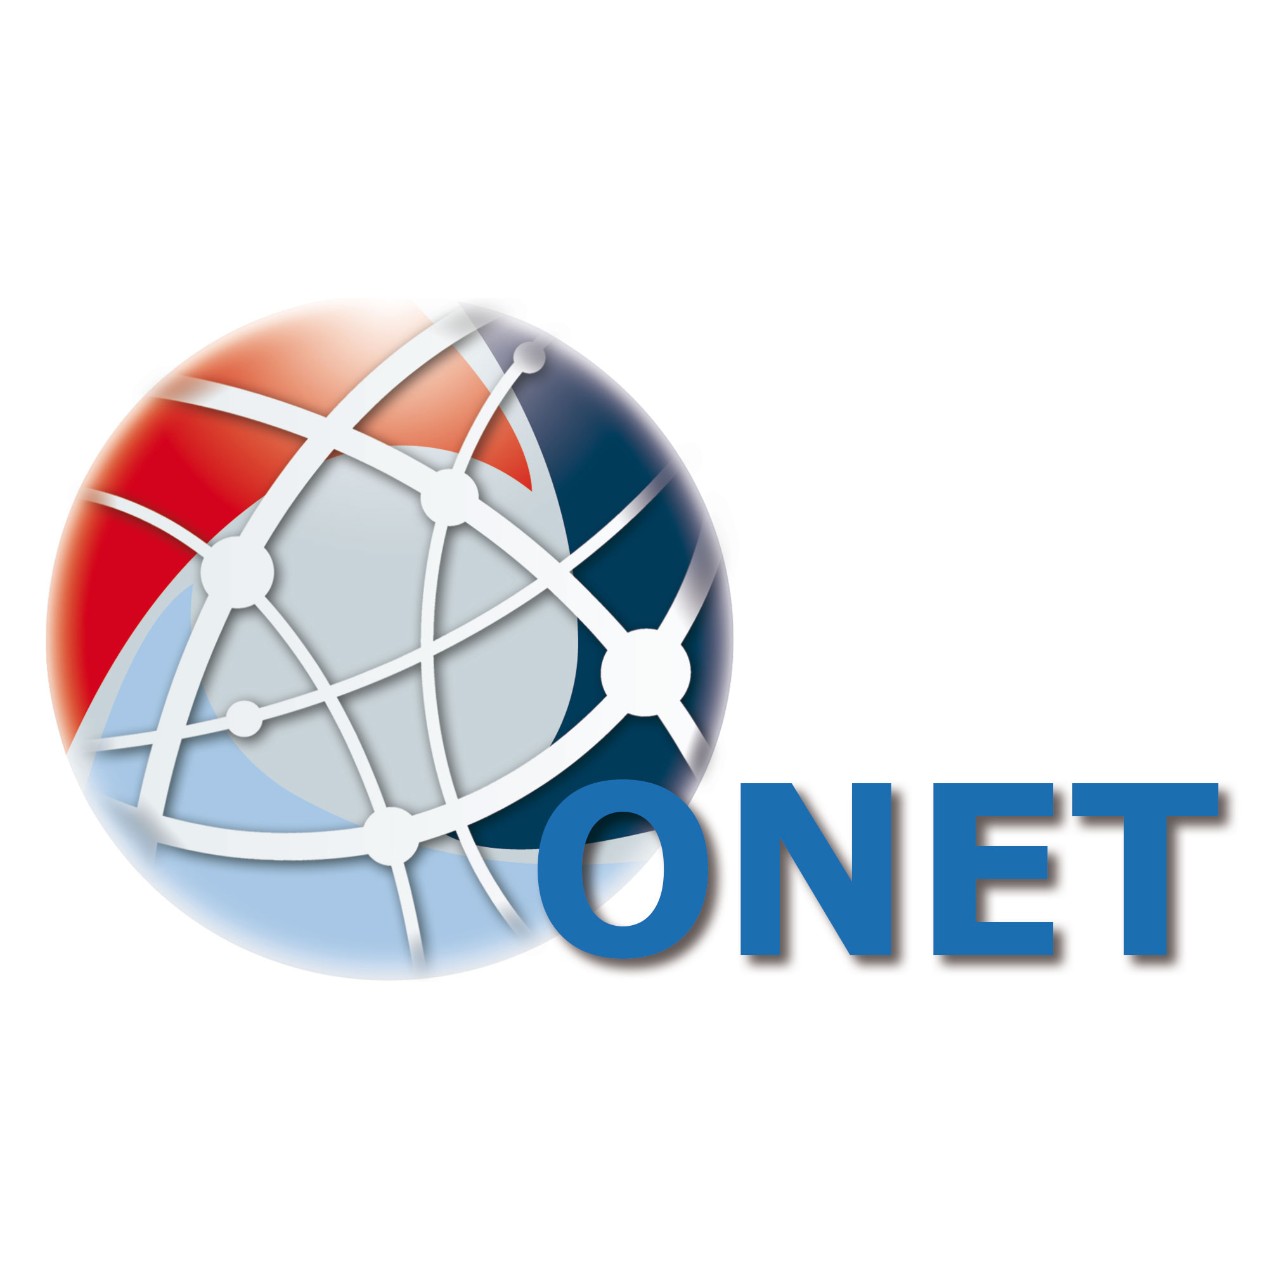 ONET Networkig Software